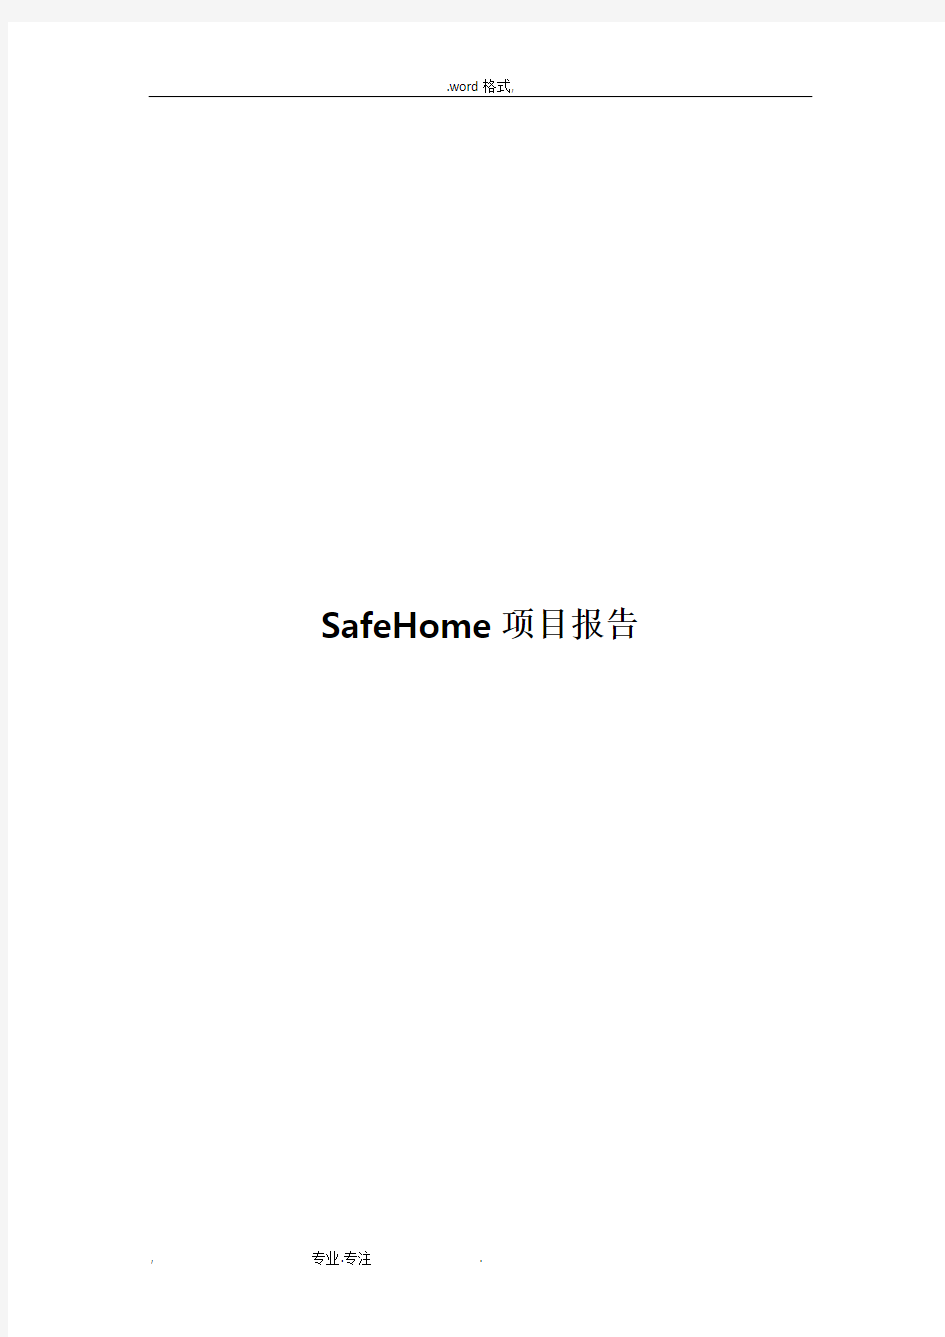 软件工程课程设计报告_SafeHome项目报告